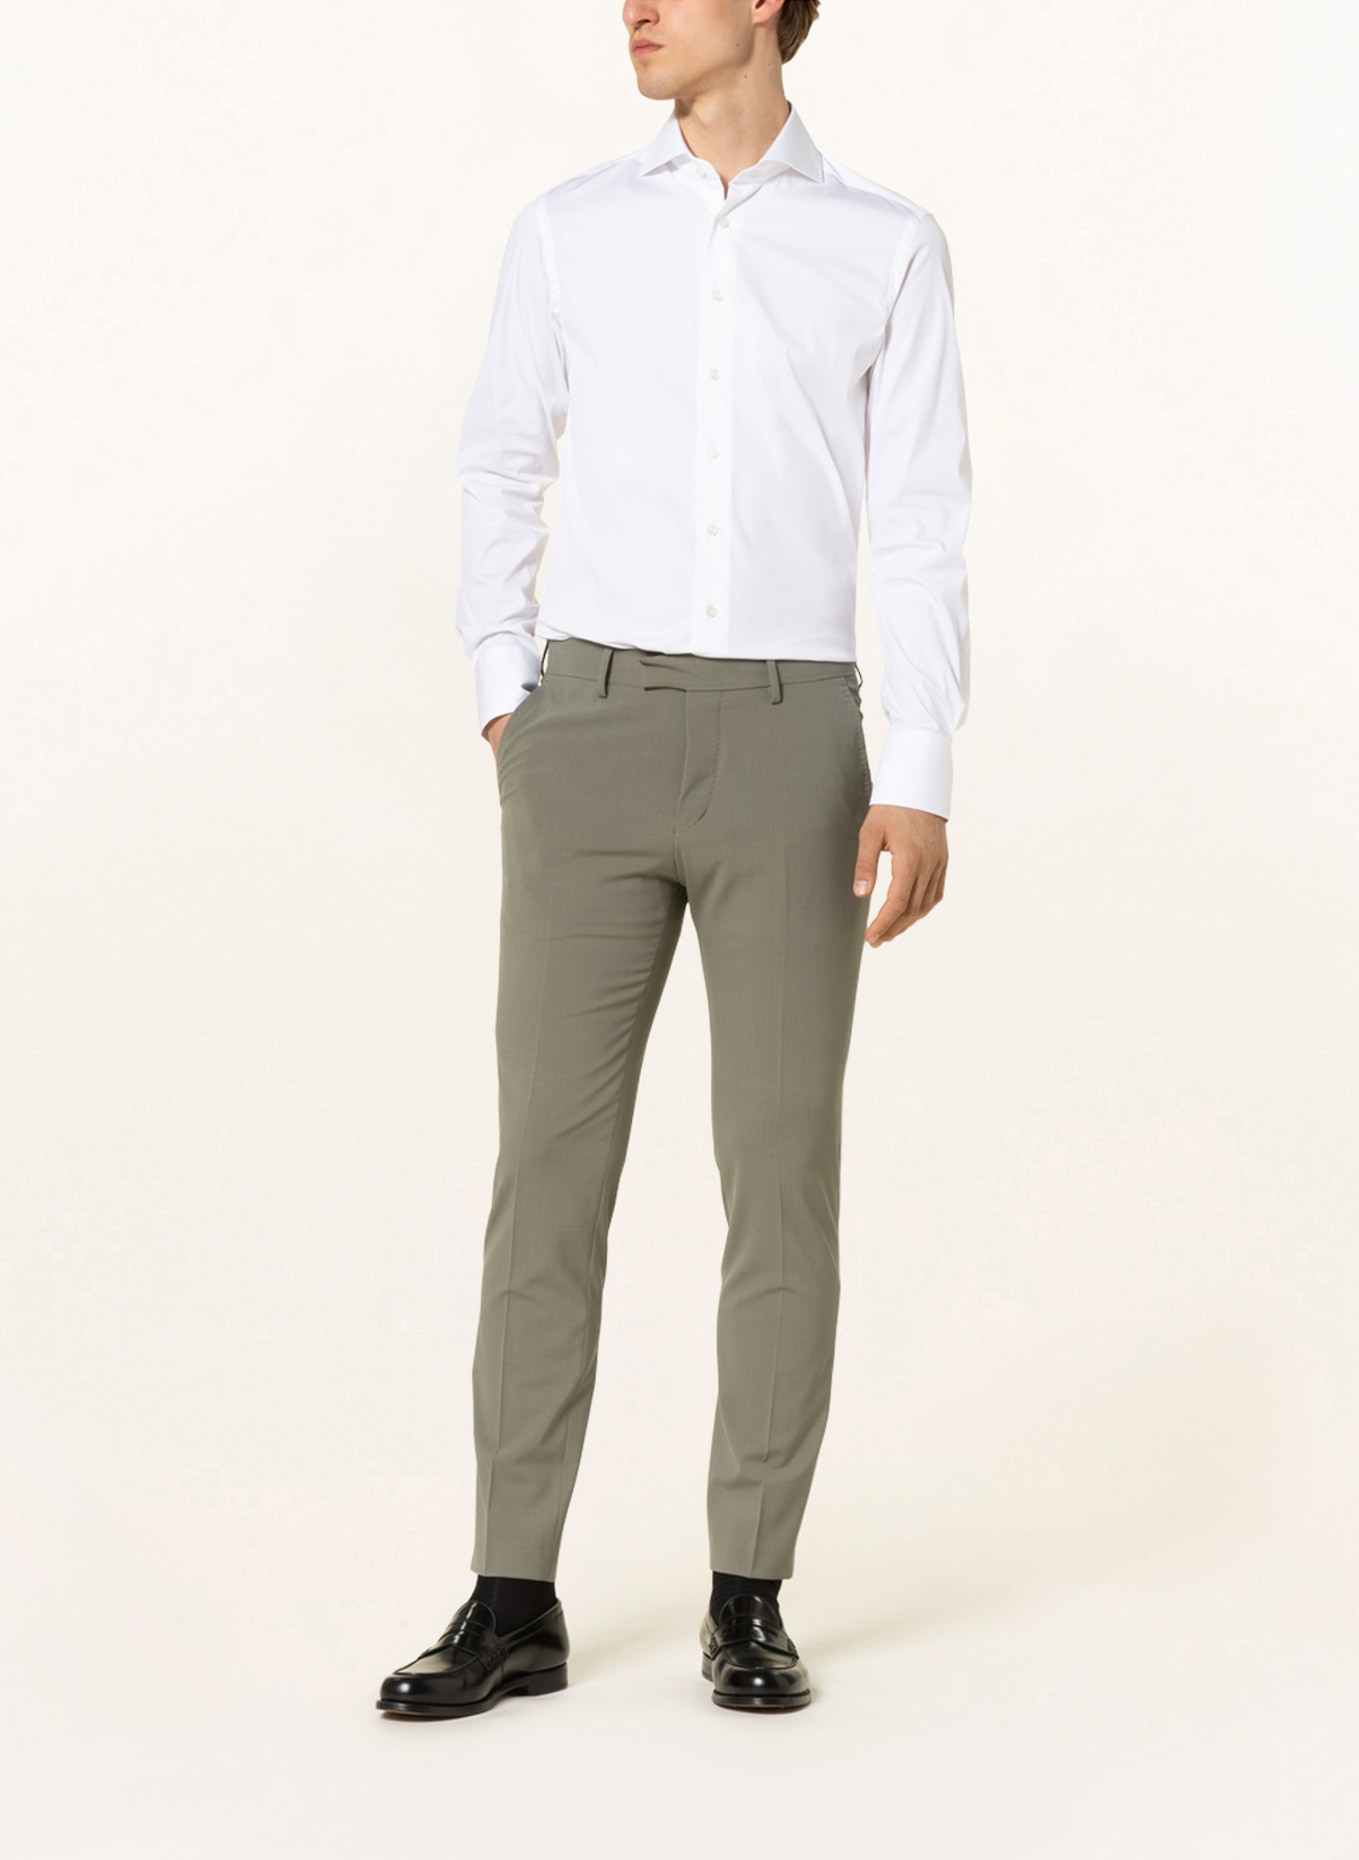 ARTIGIANO Shirt slim fit, Color: WHITE (Image 2)